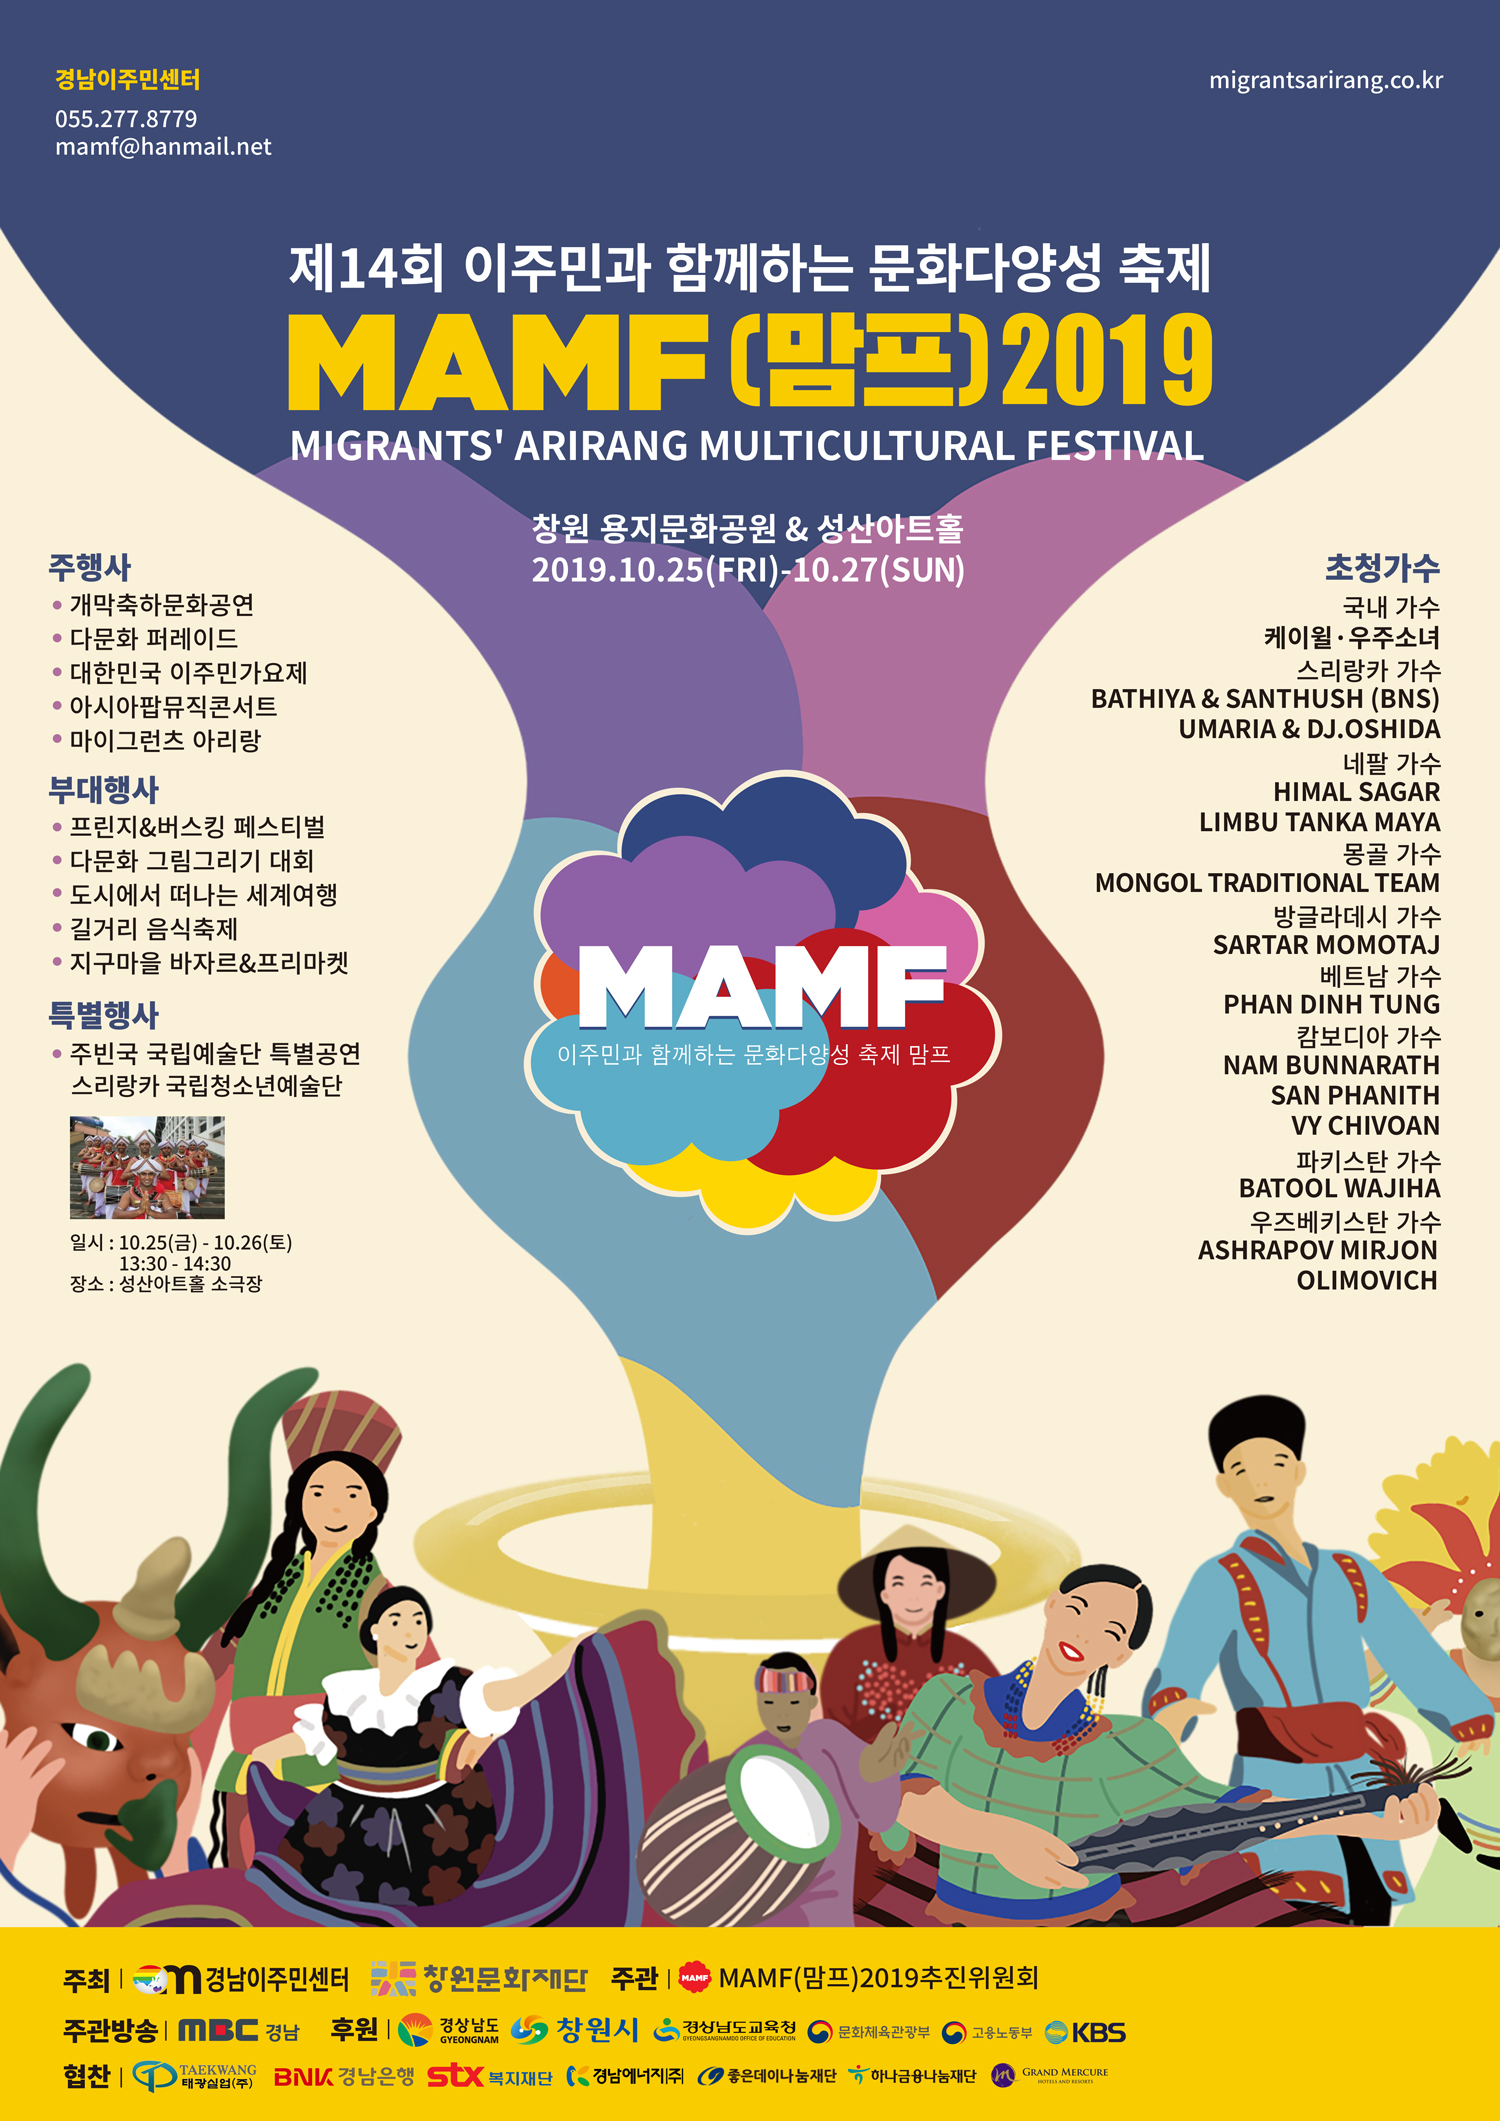 「이주민과 함꼐하는 문화다양성축제 MAMF(맘프) 2019」 안내 1